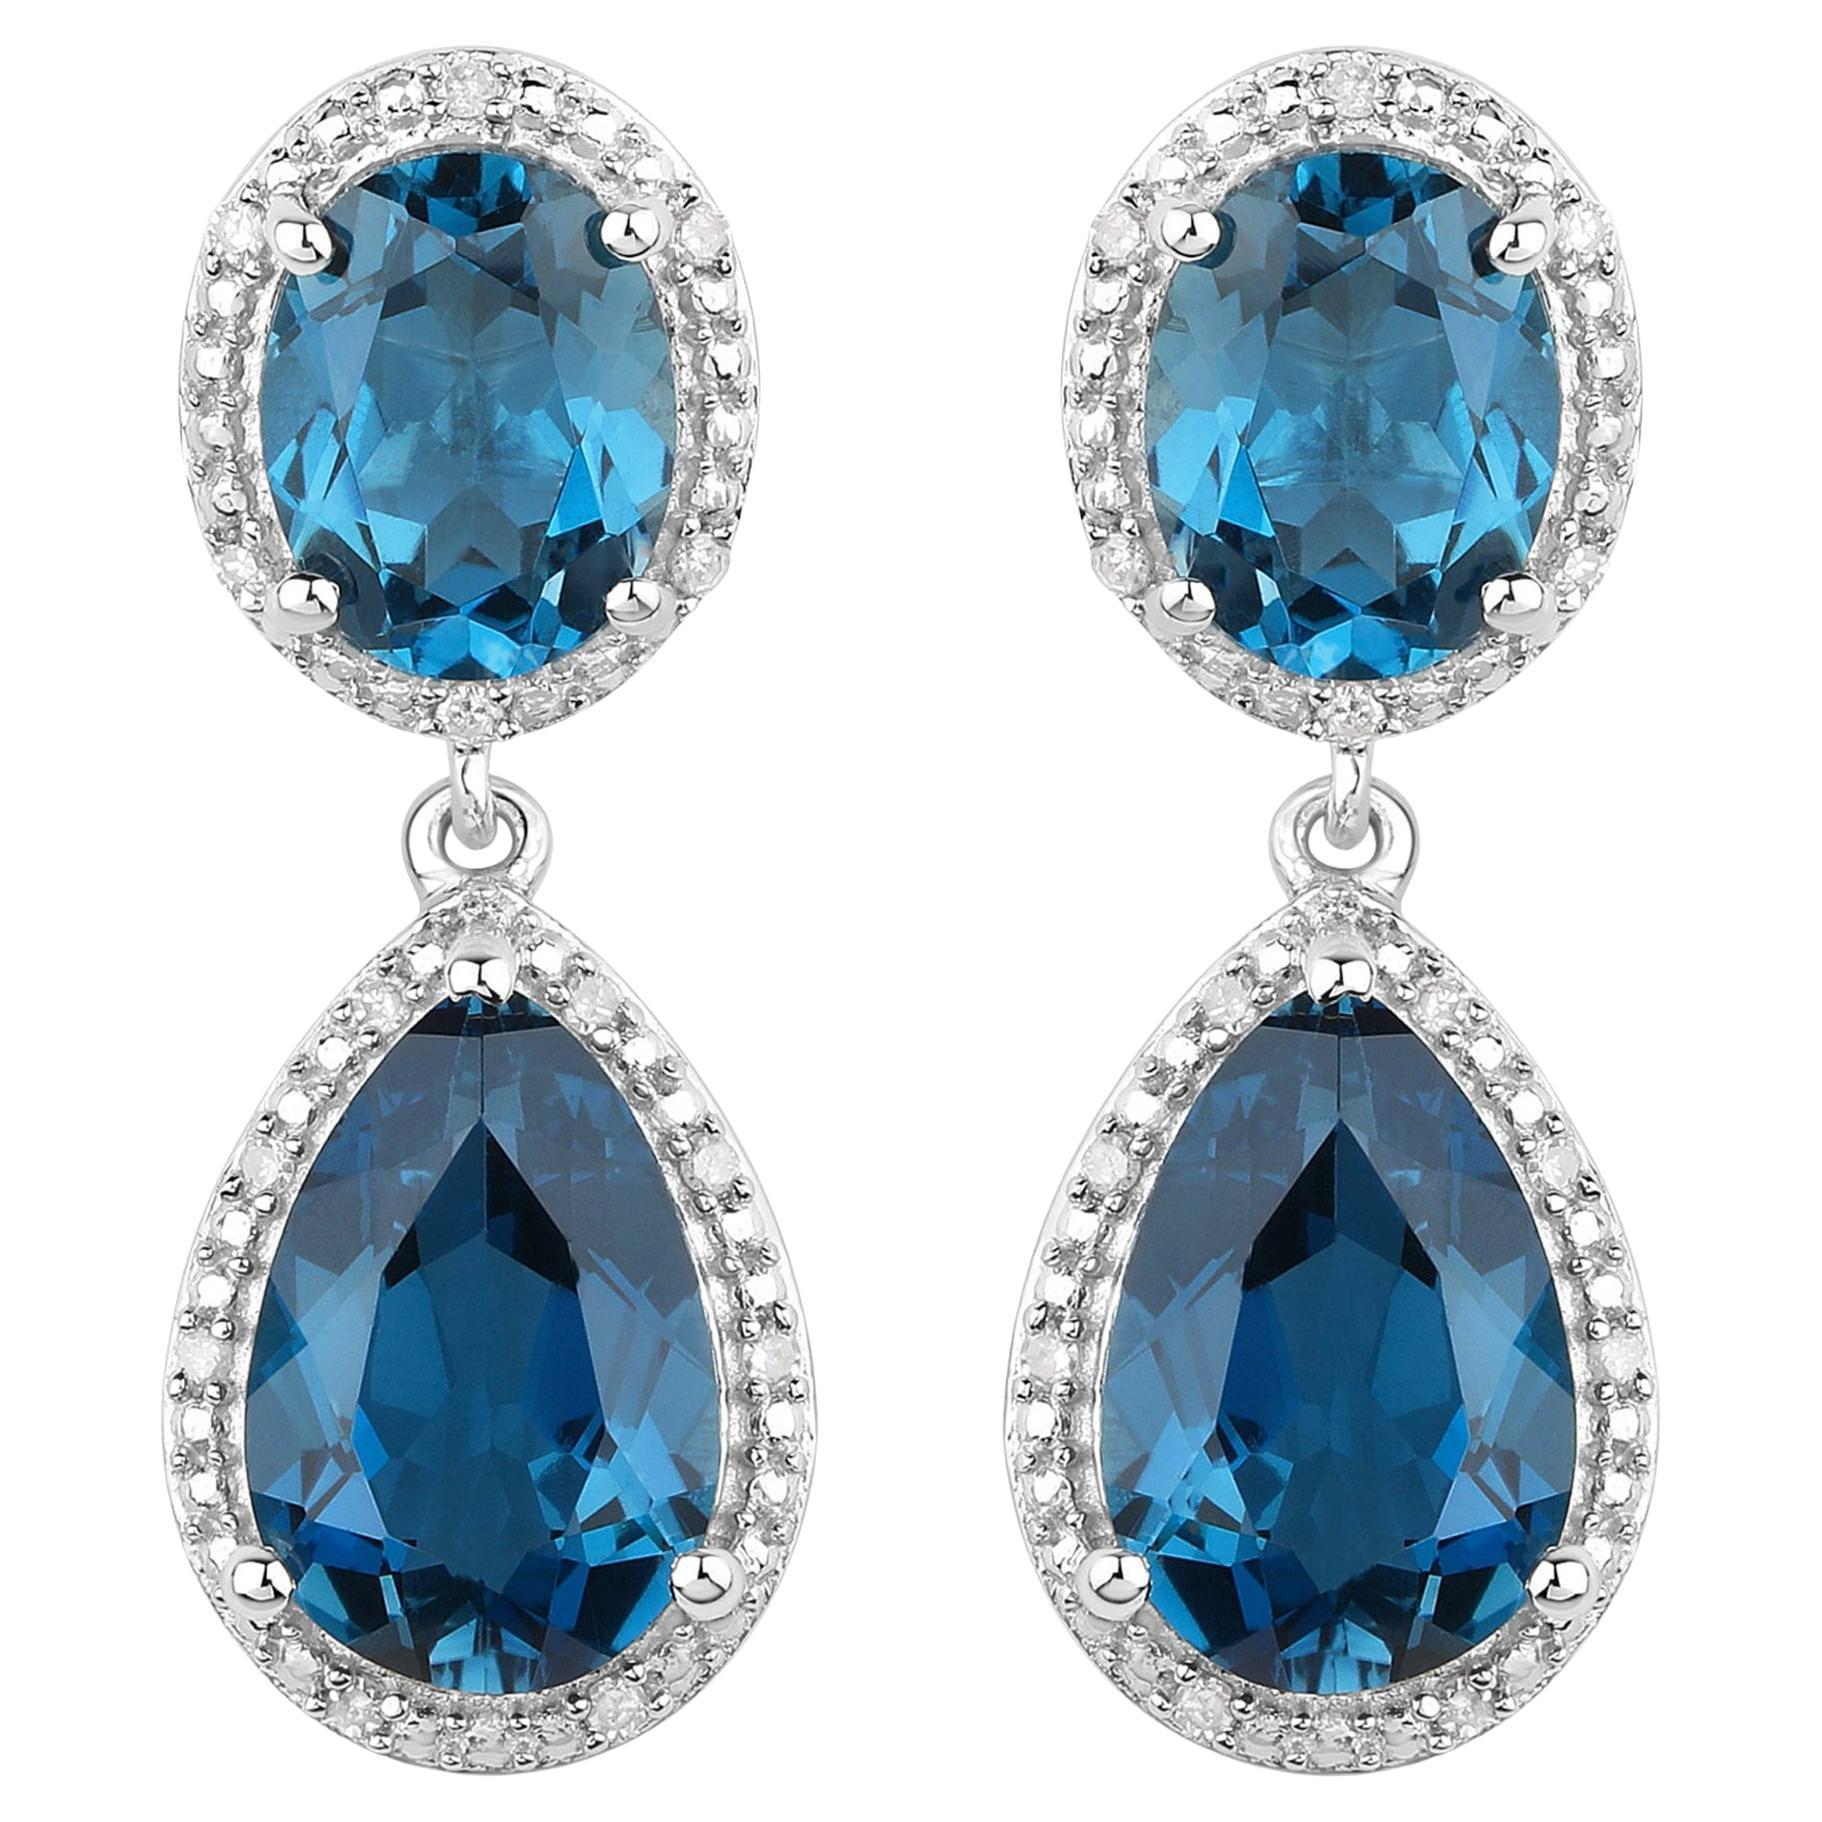 Londoner Blauer Topas-Ohrringe mit Diamantfassung insgesamt 11,45 Karat